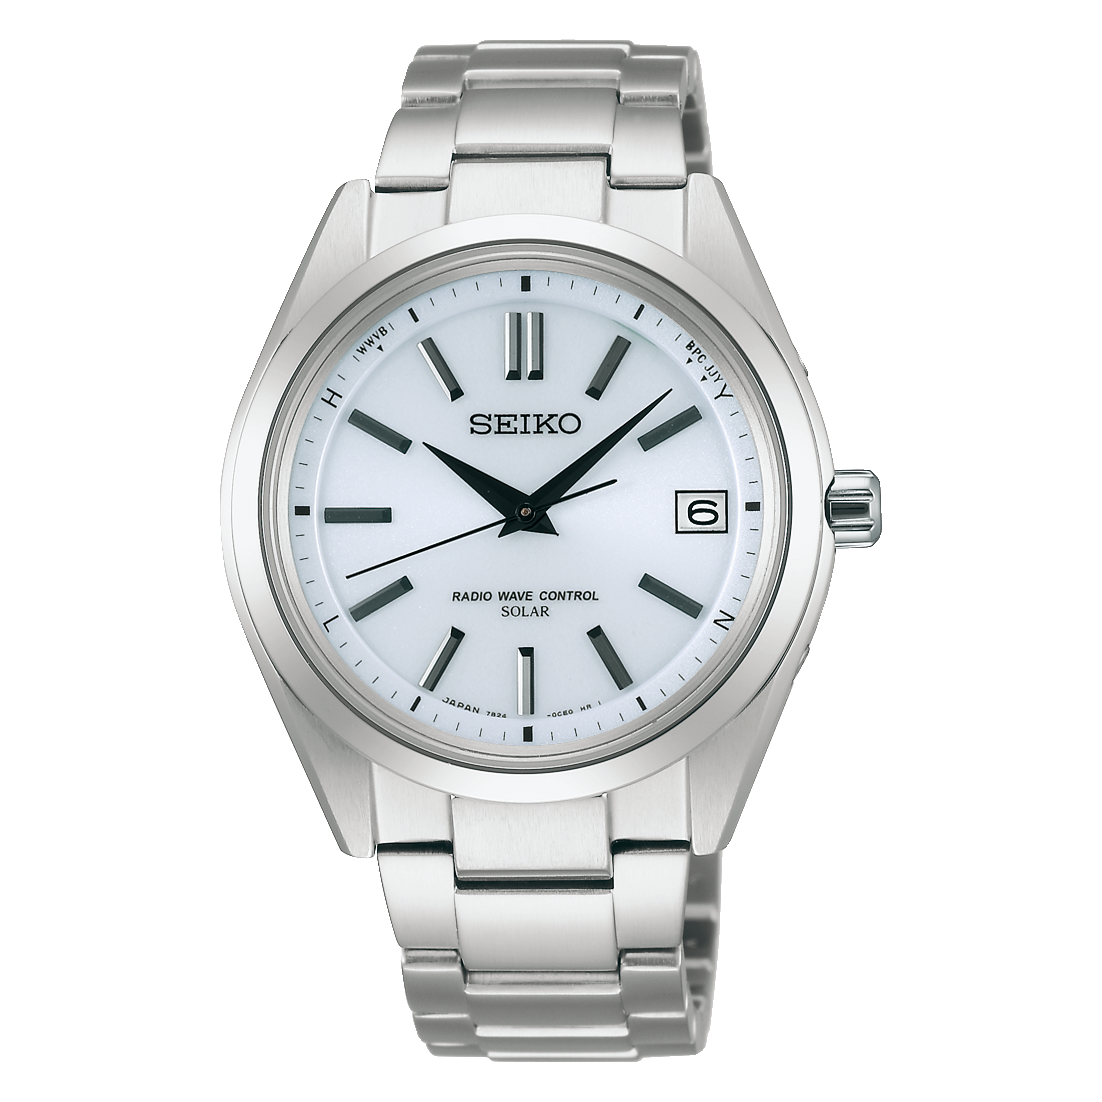 店内全品対象 腕時計のななぷれセイコー ブライツ 7B24 スターティング ソーラー電波 SAGZ079 SEIKO BRIGHTZ 腕時計 